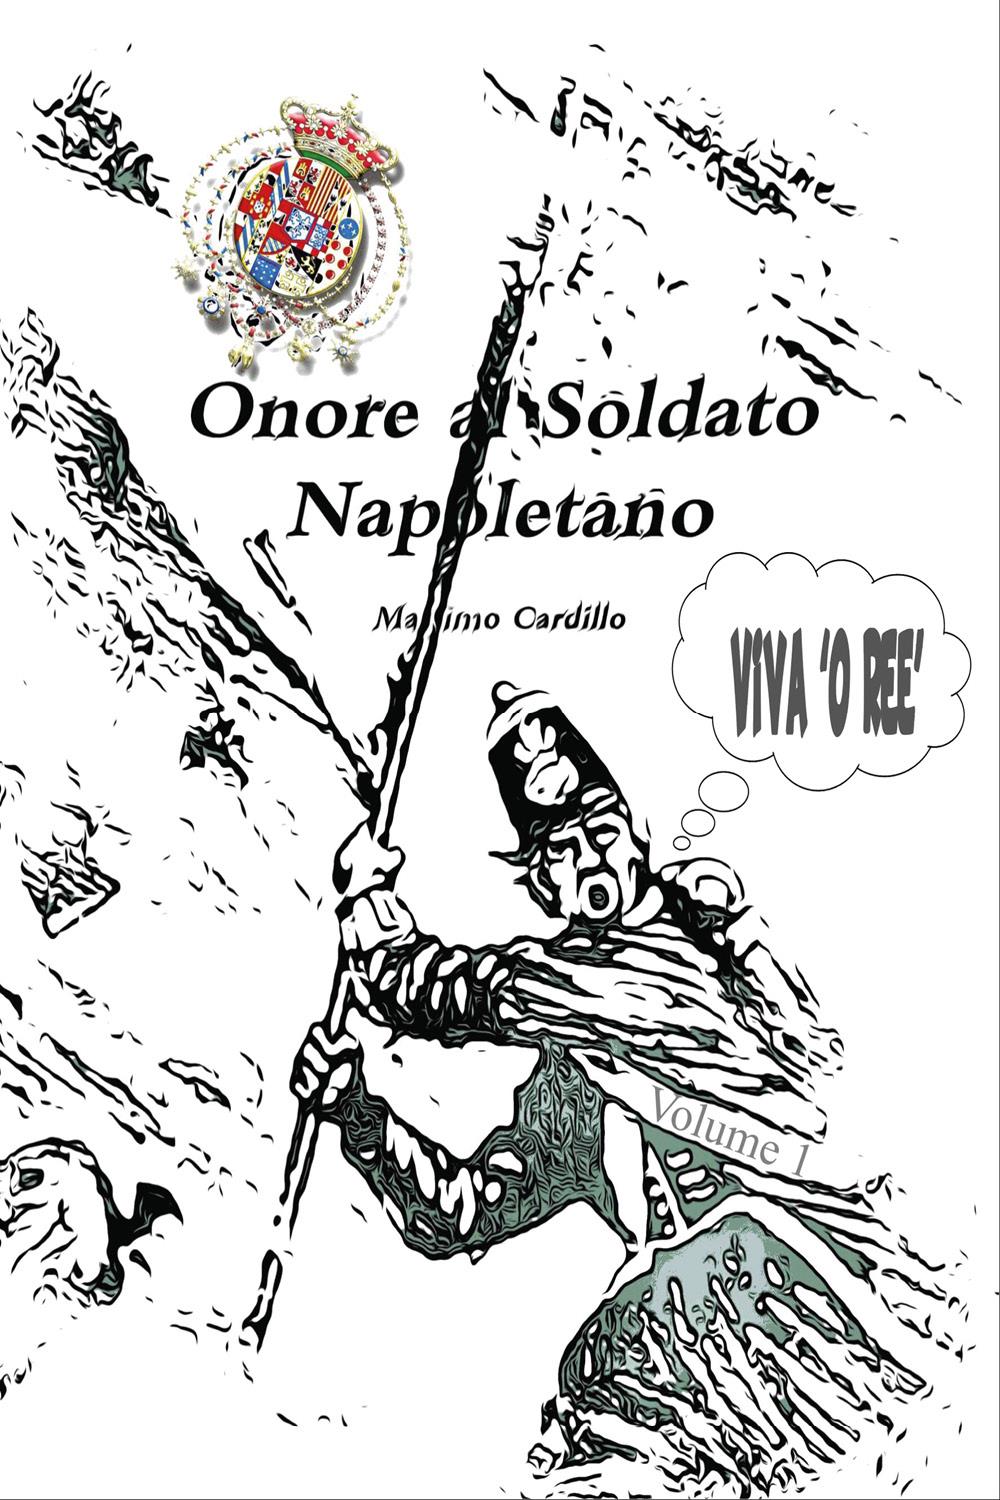 Onore al soldato Napoletano